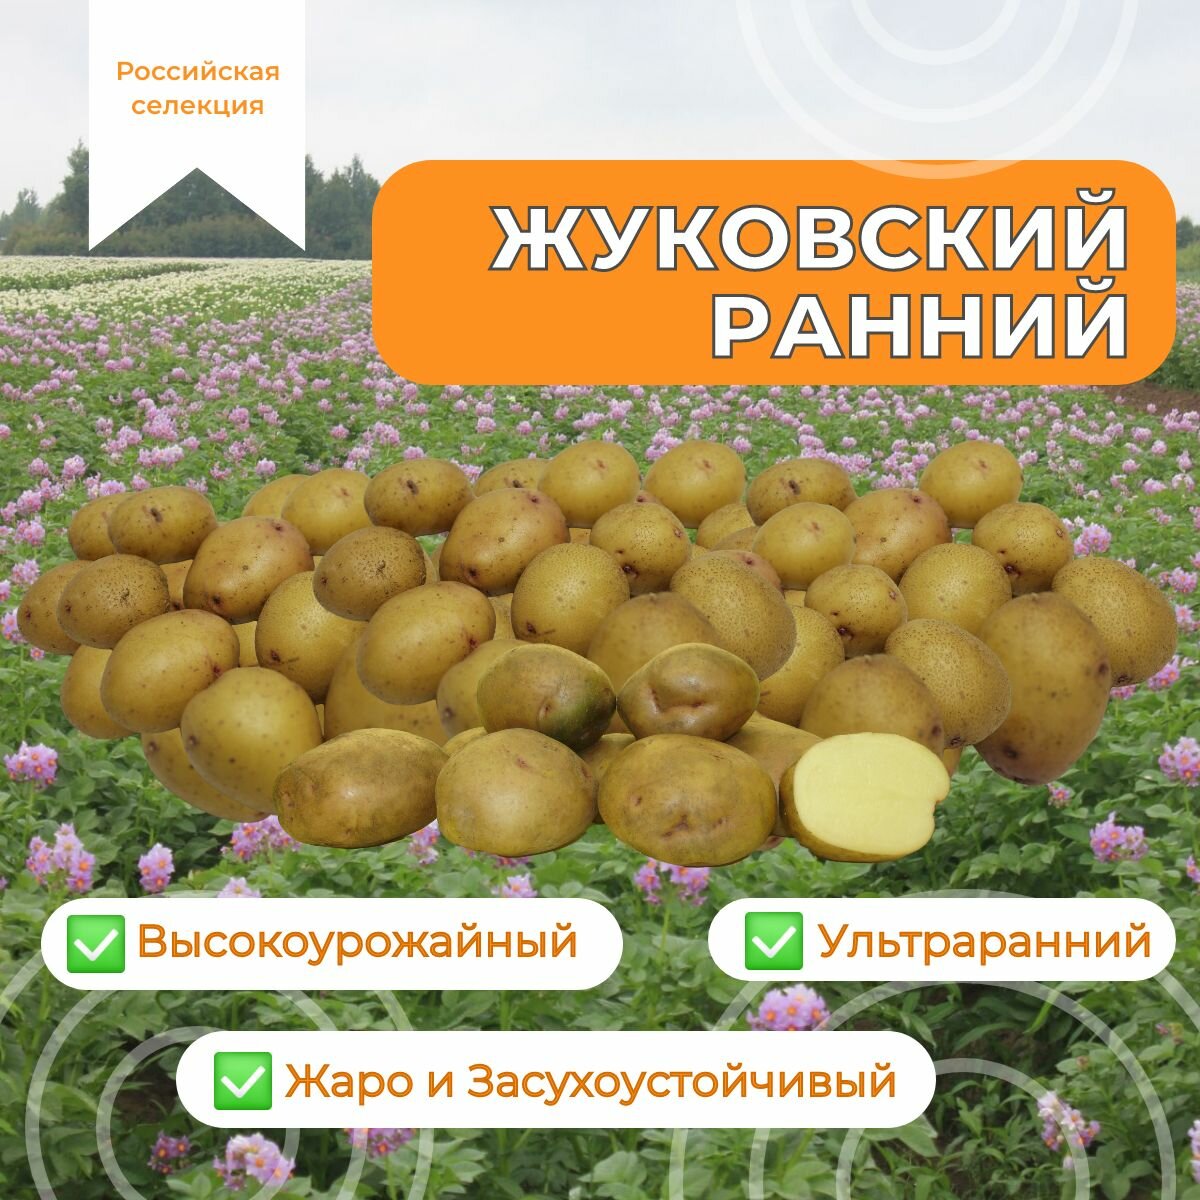 Картофель семенной жуковский ранний (суперэлита) (2 кг) Ультраранний